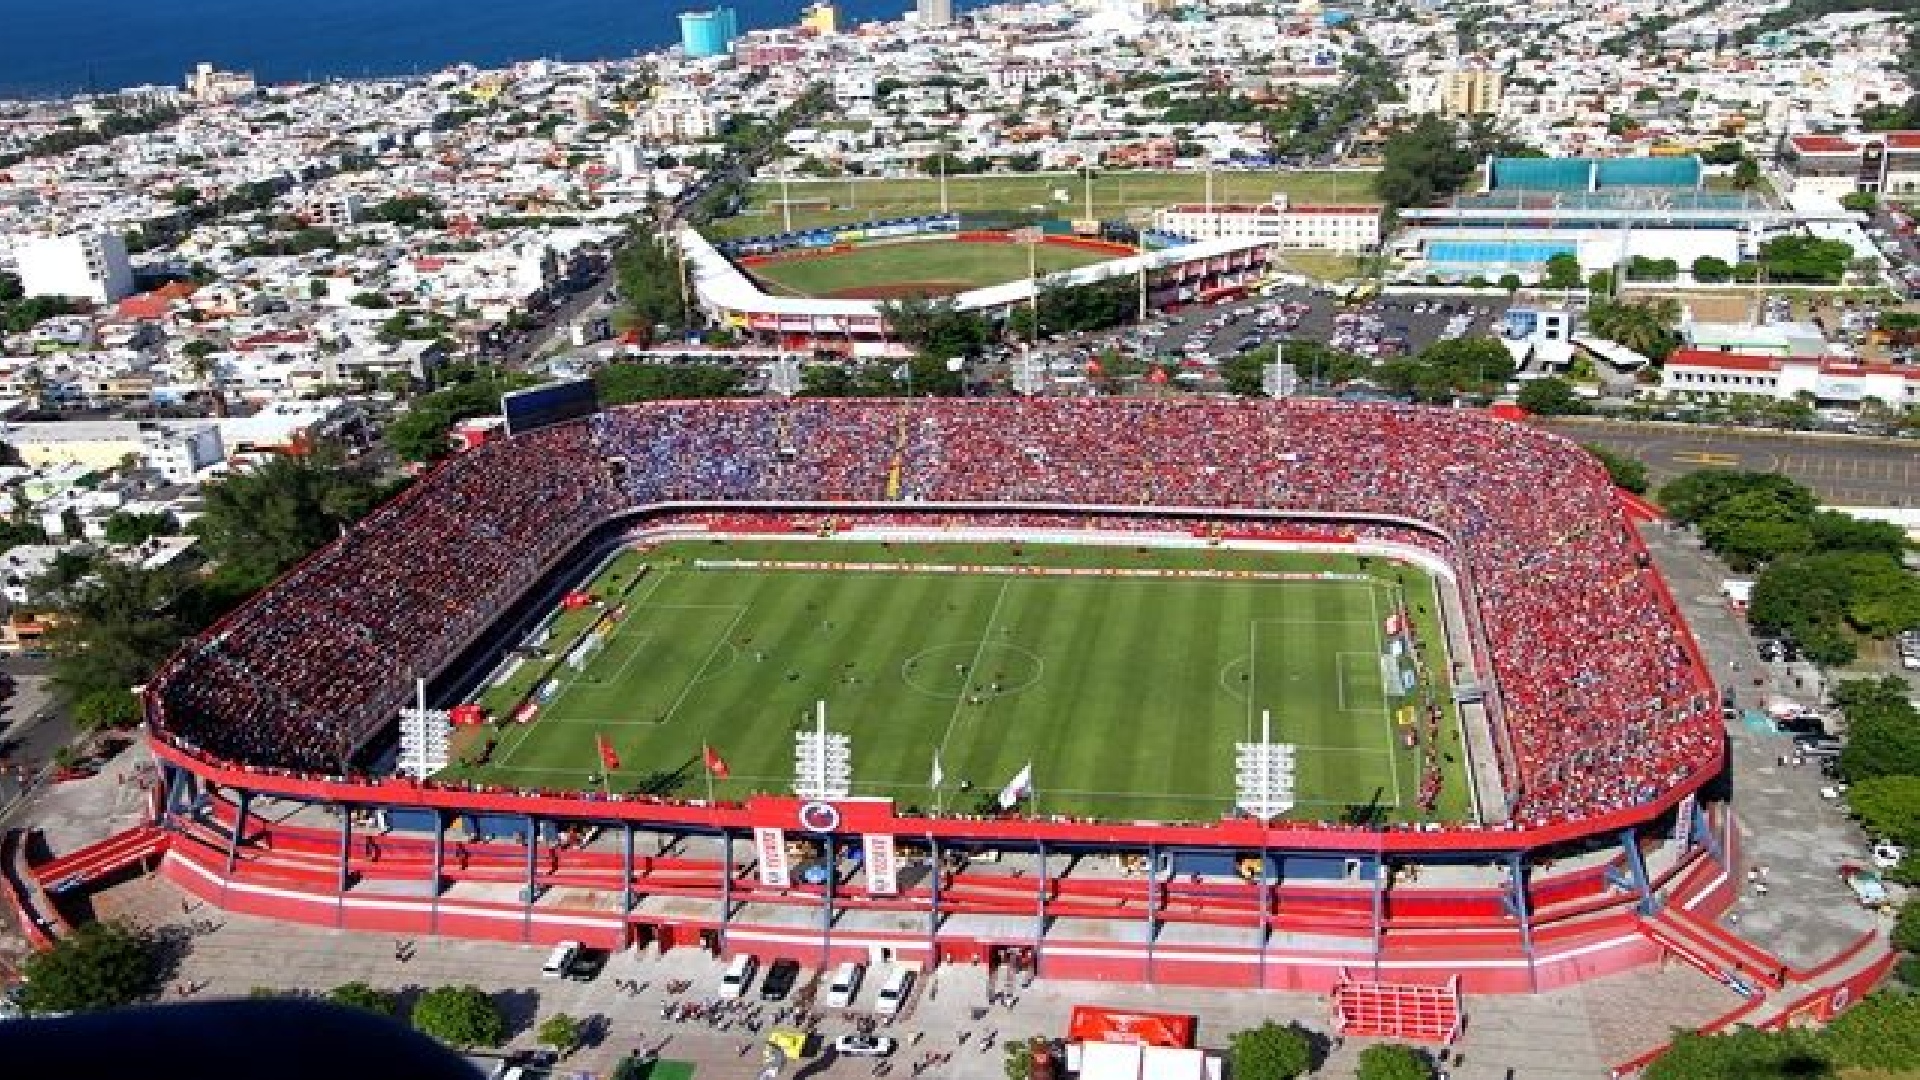 Piratas y Tiburón, los nuevos equipos que revivirán el fútbol profesional  en Veracruz - Infobae